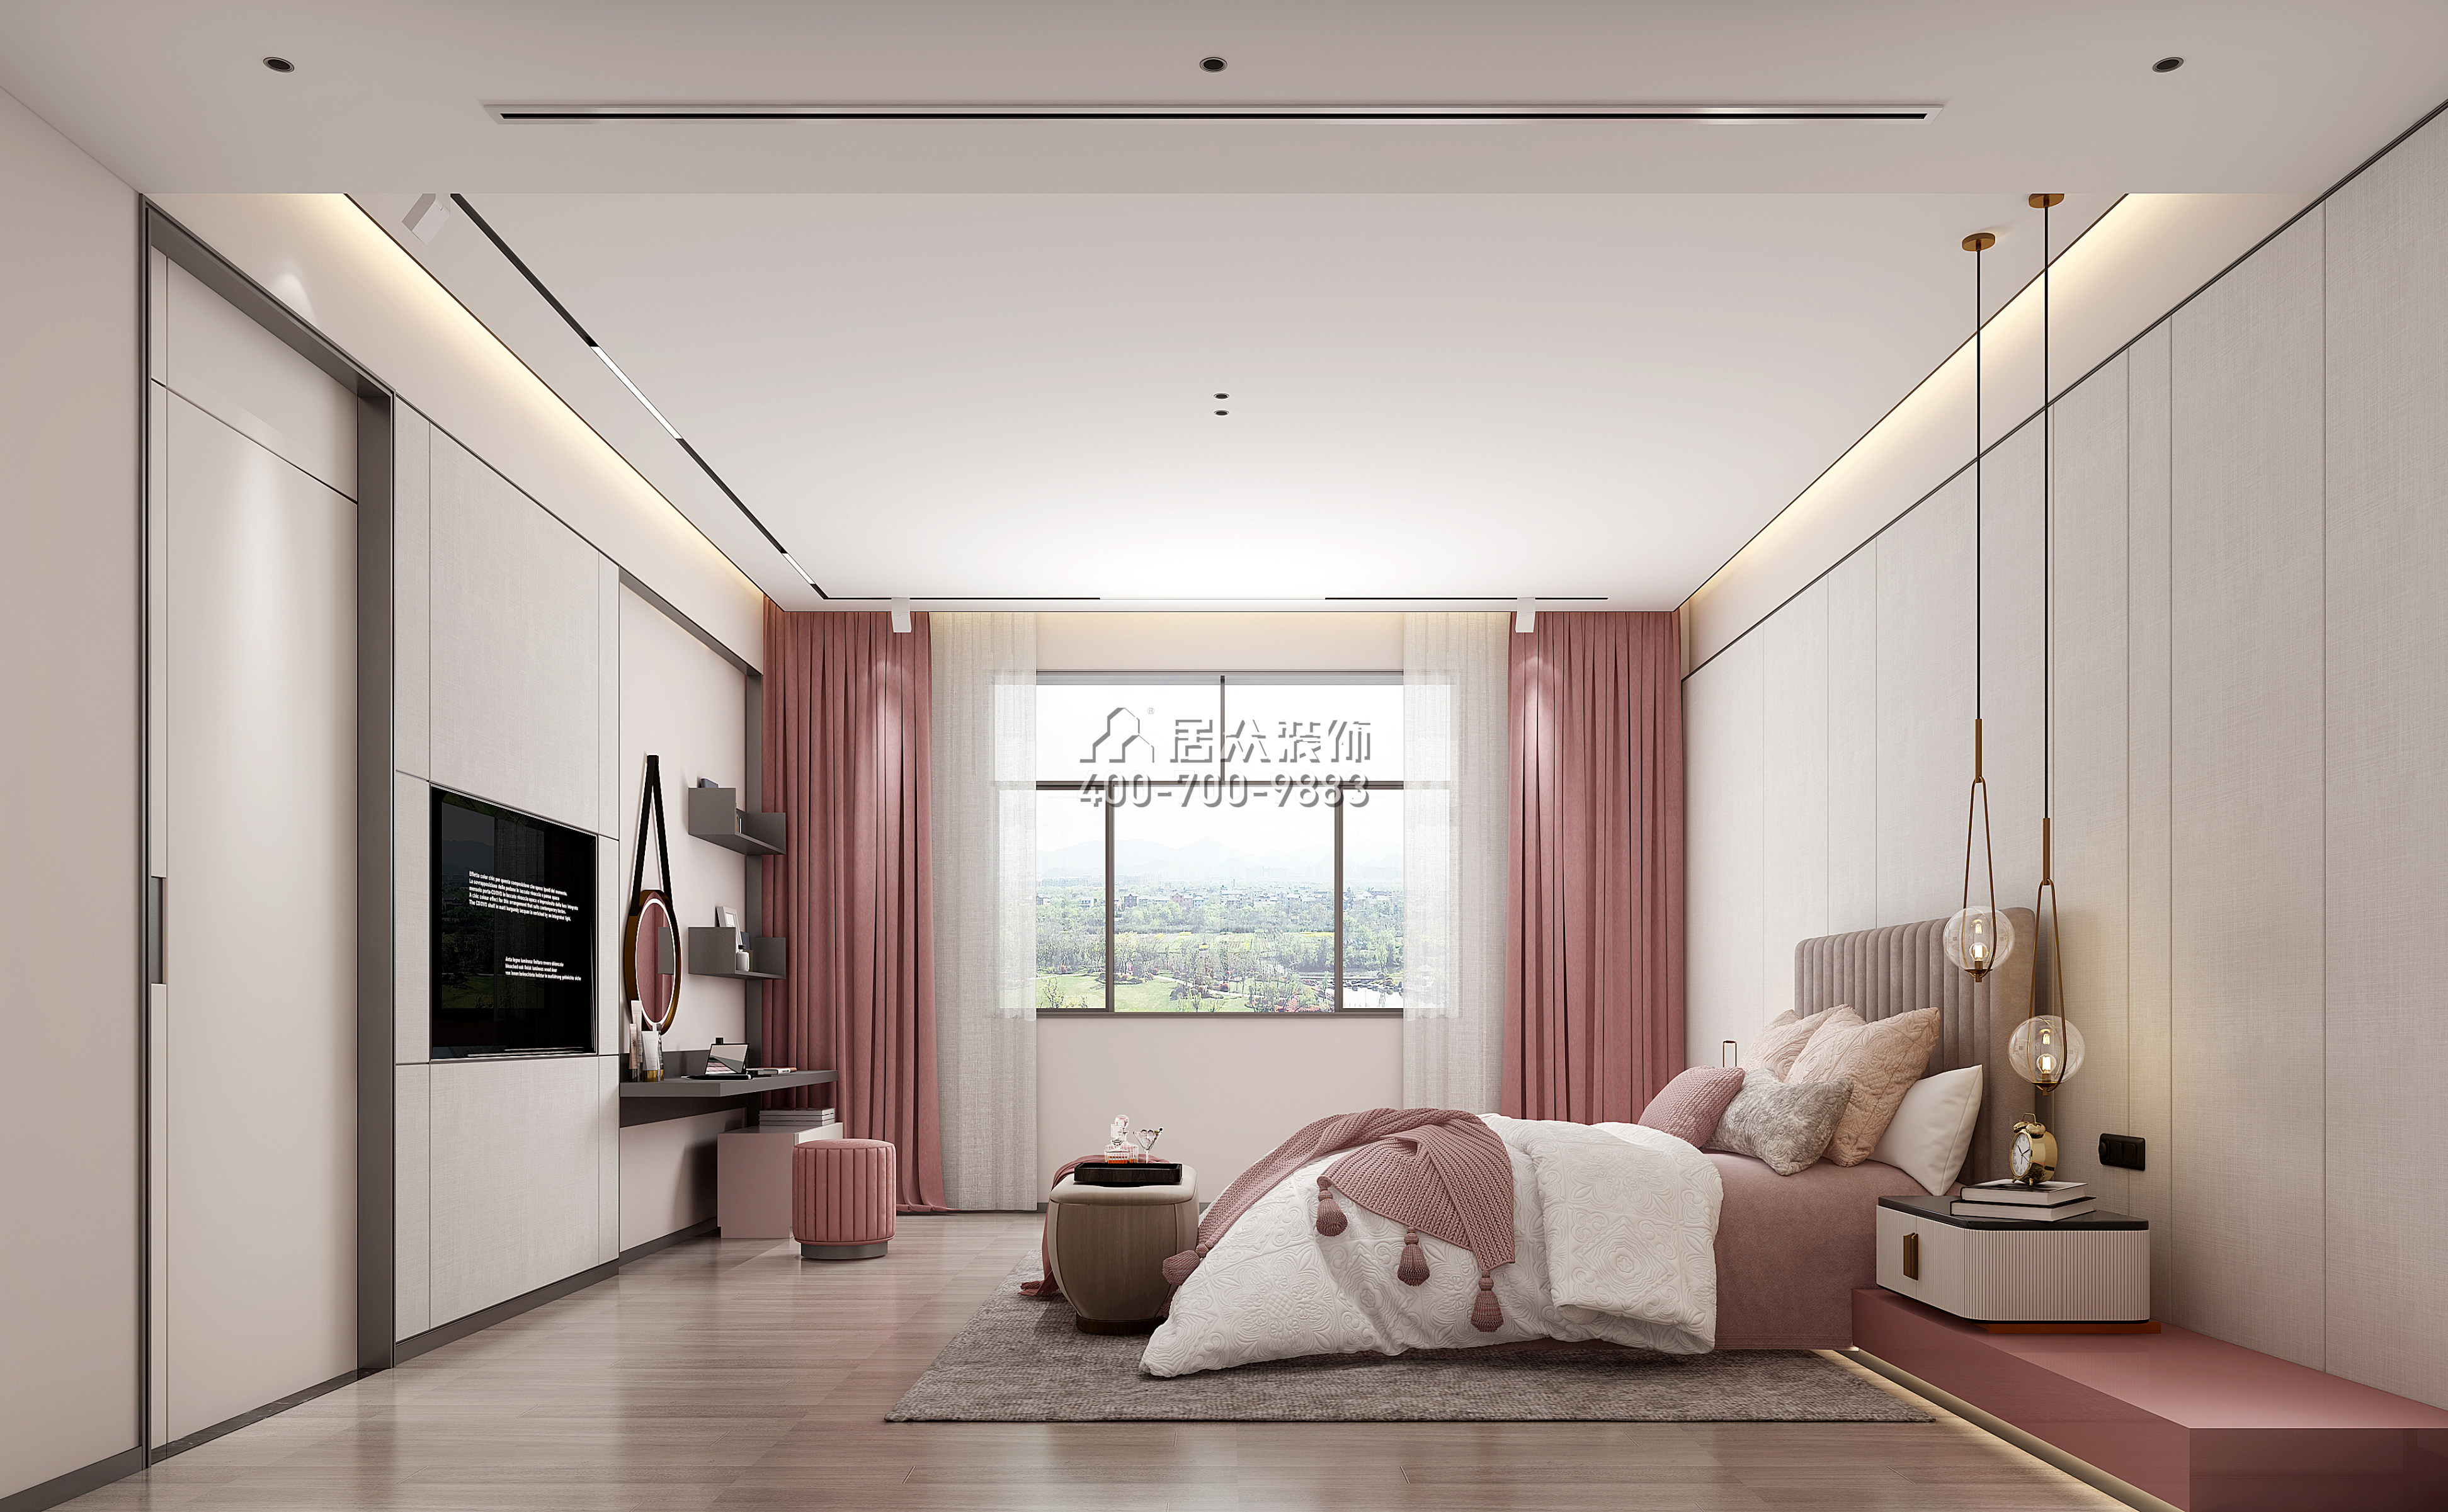 匯景御海藍岸900平方米現代簡約風格別墅戶型臥室裝修效果圖